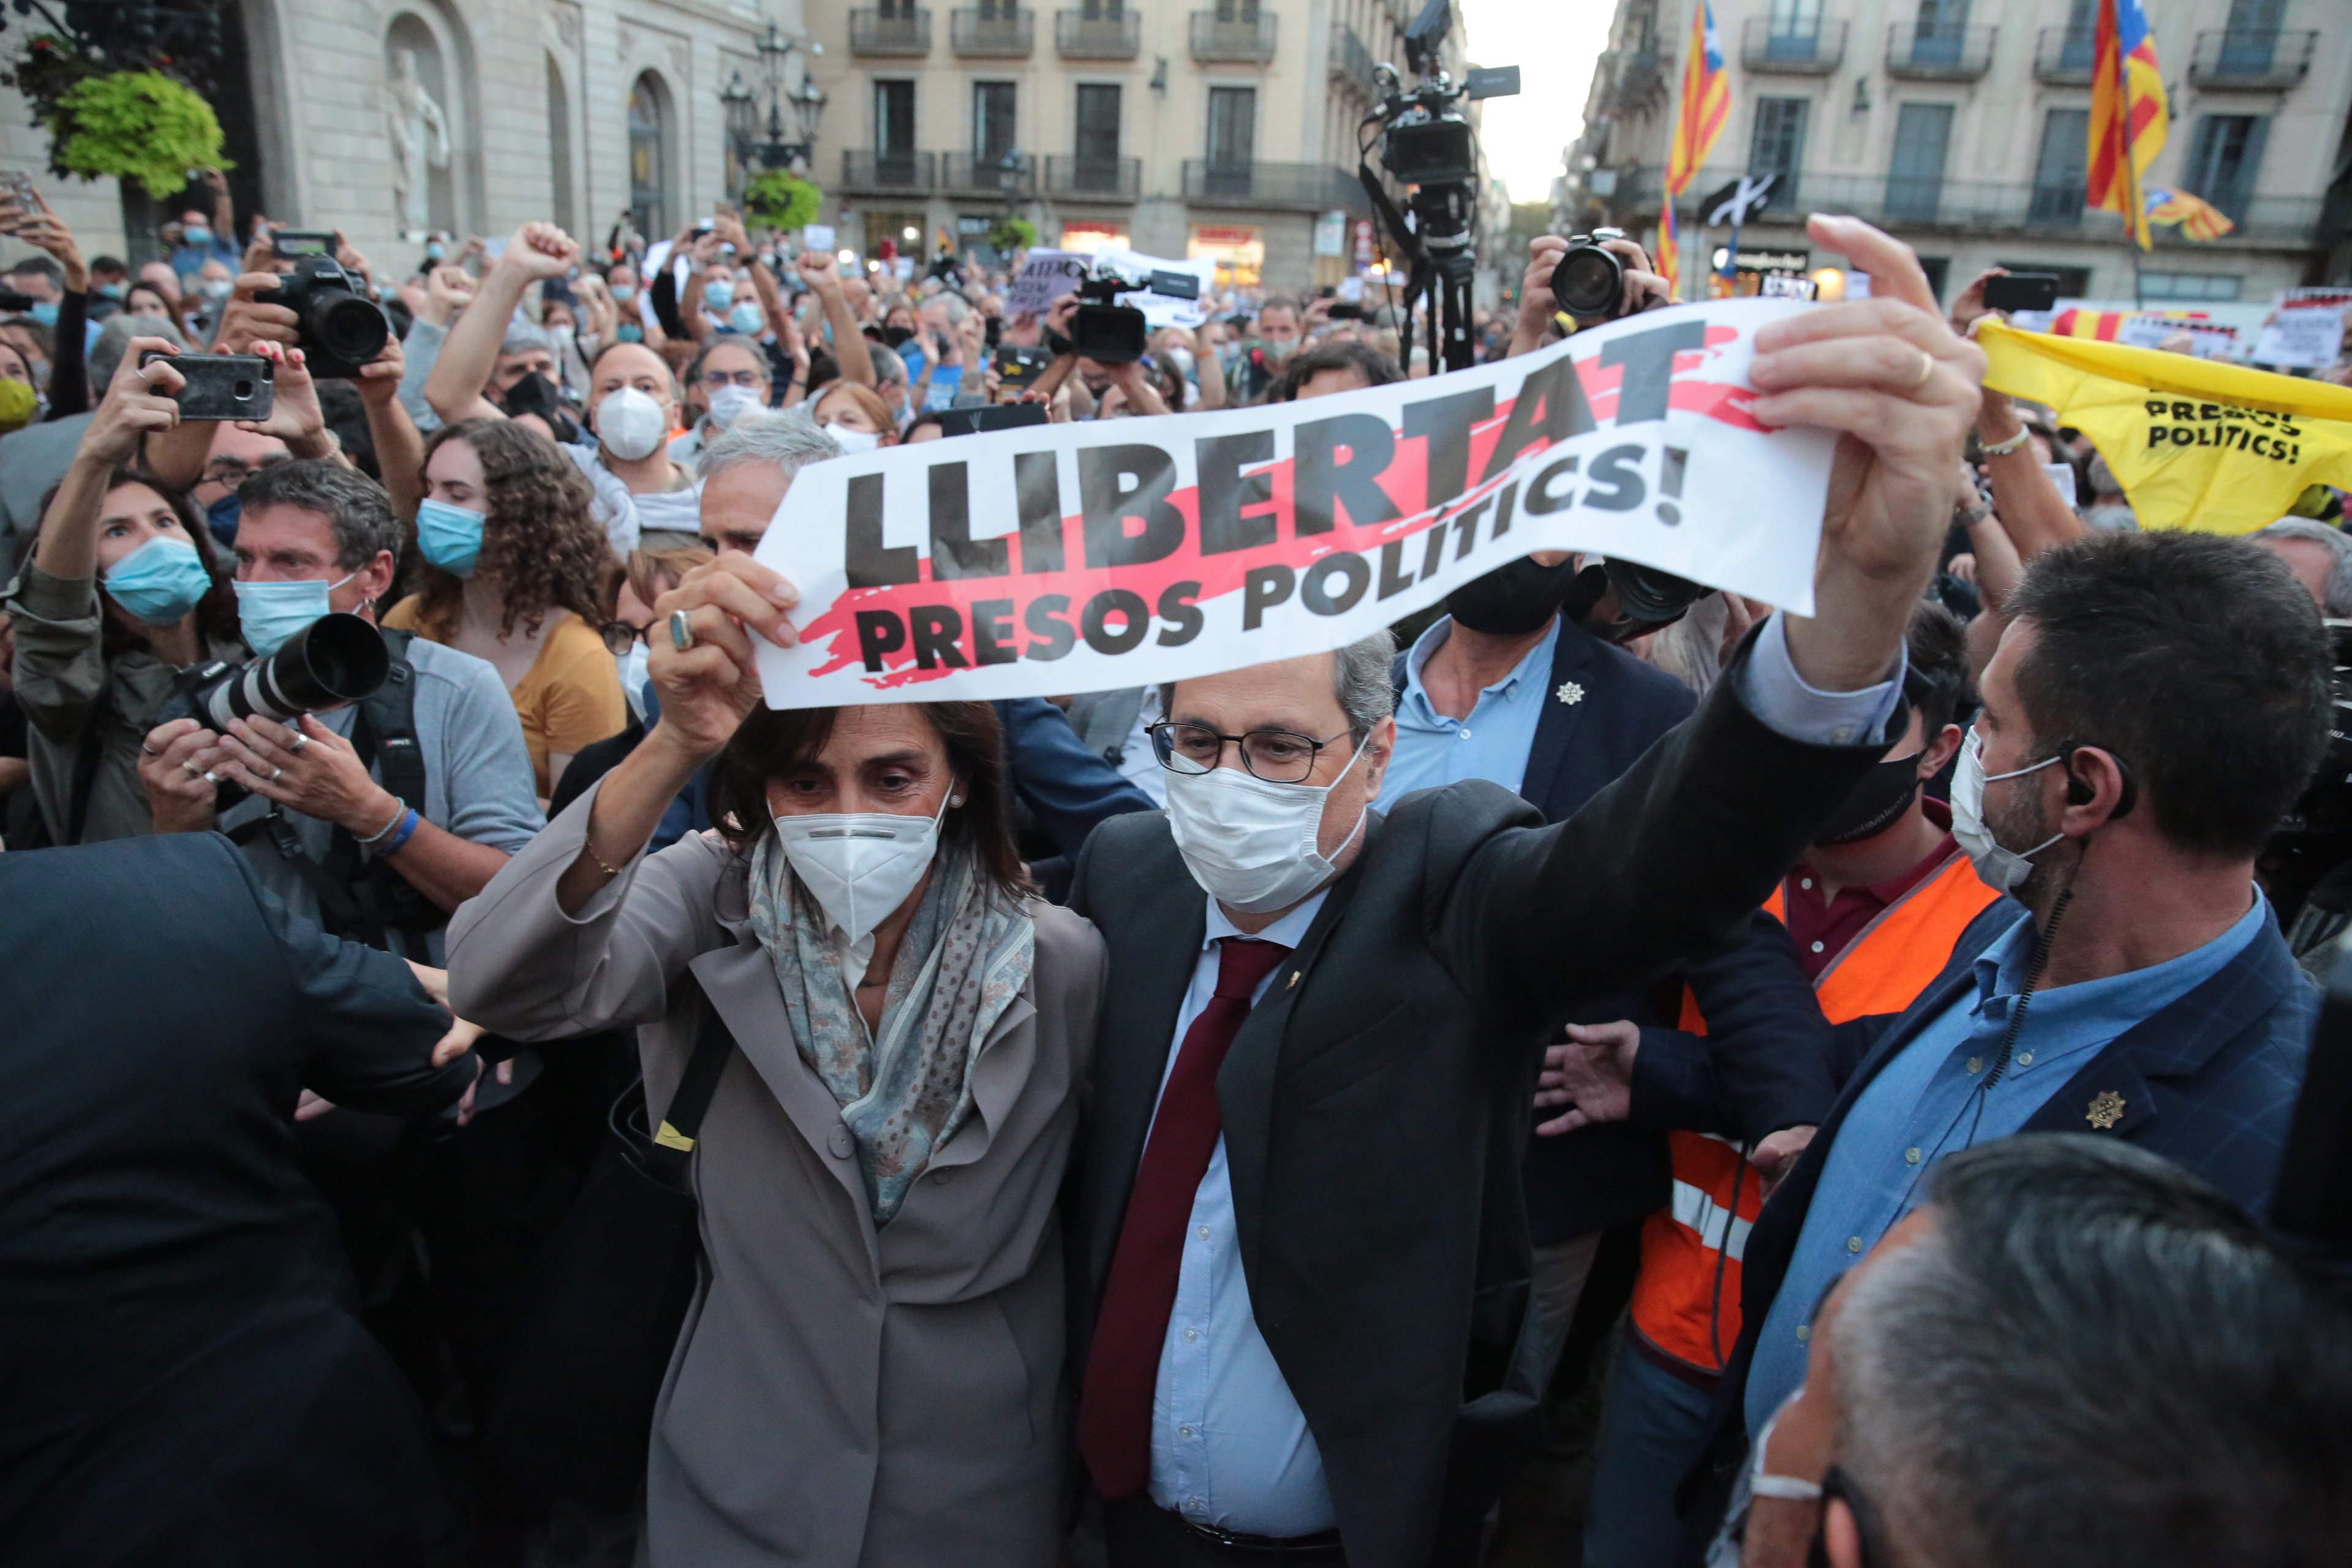 Els presos, Torra i Messi: temes que han internacionalitzat Catalunya a la xarxa